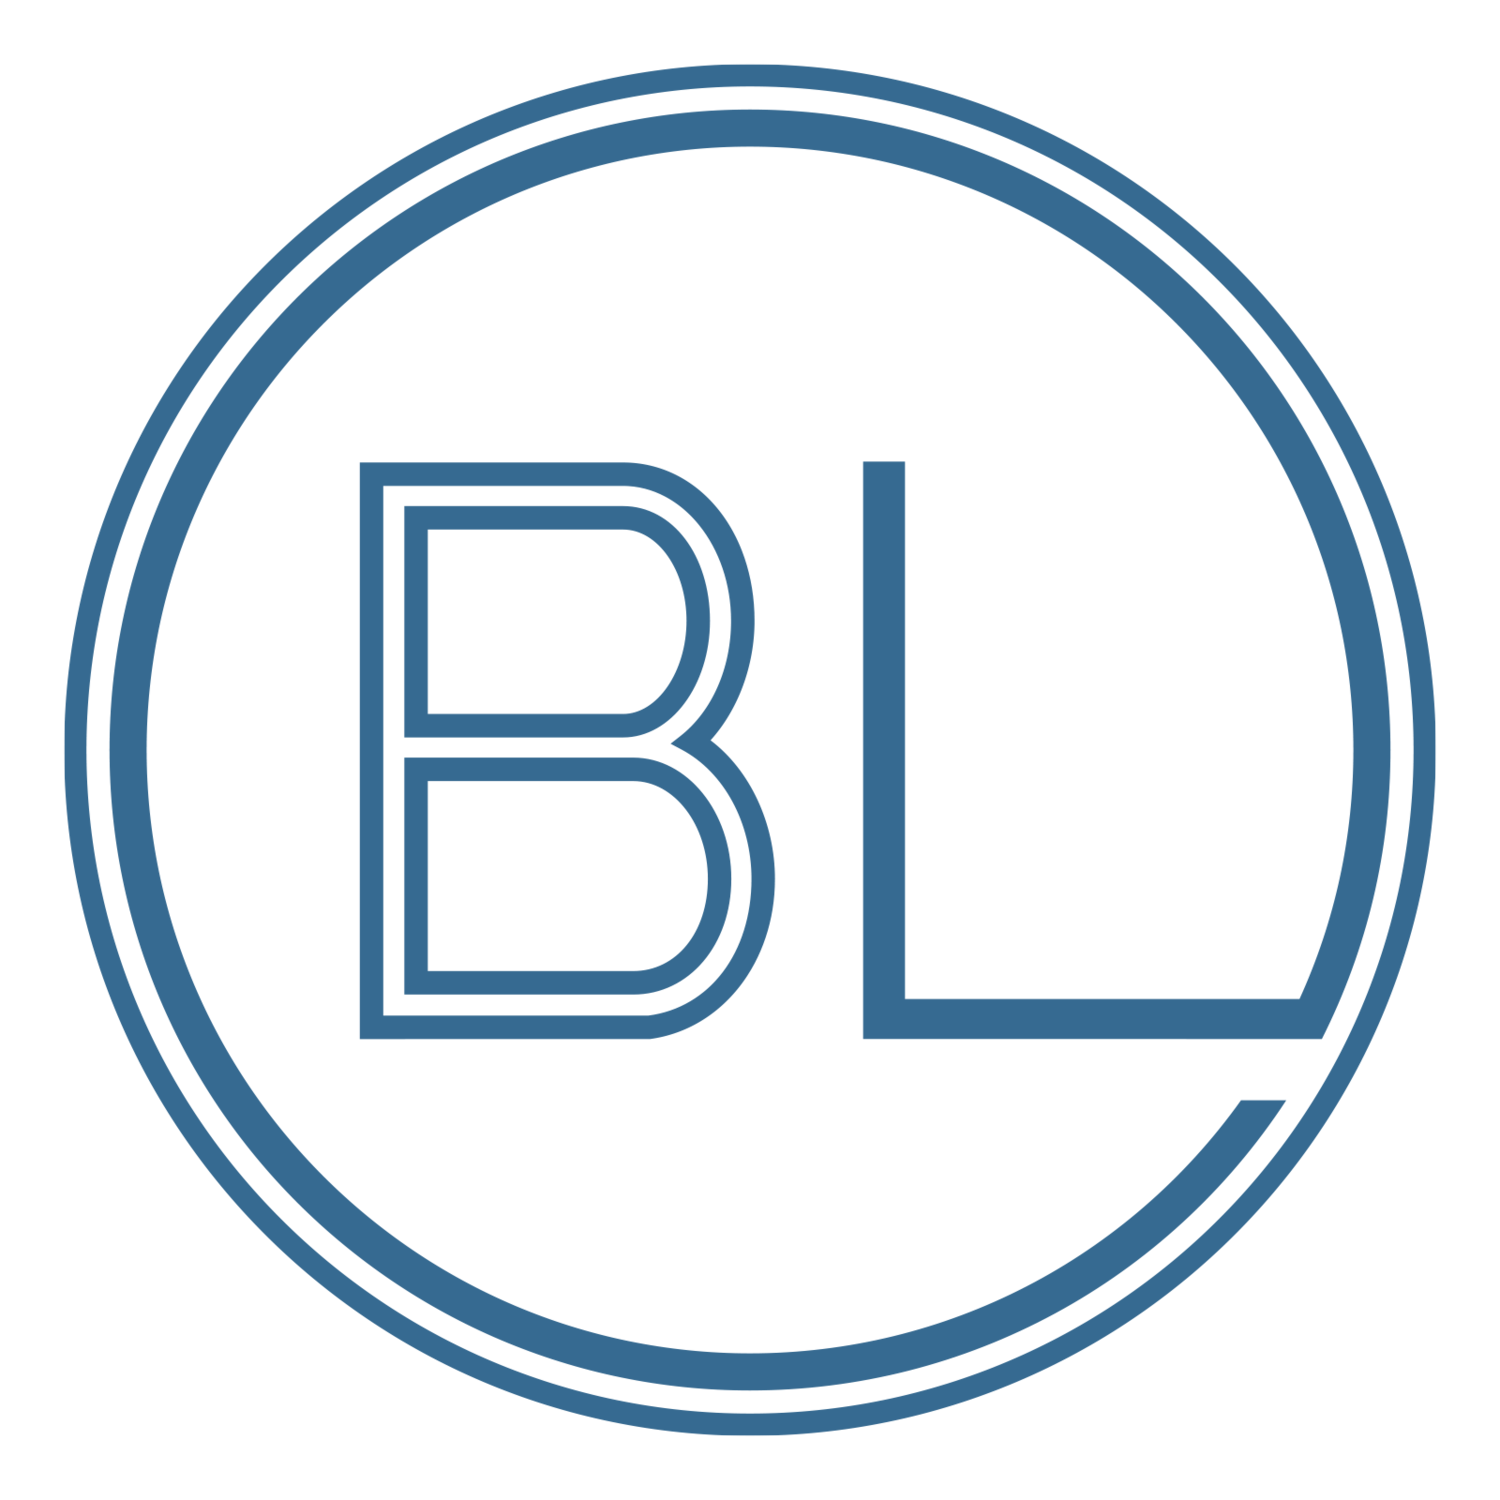 www.bluelabelband.com